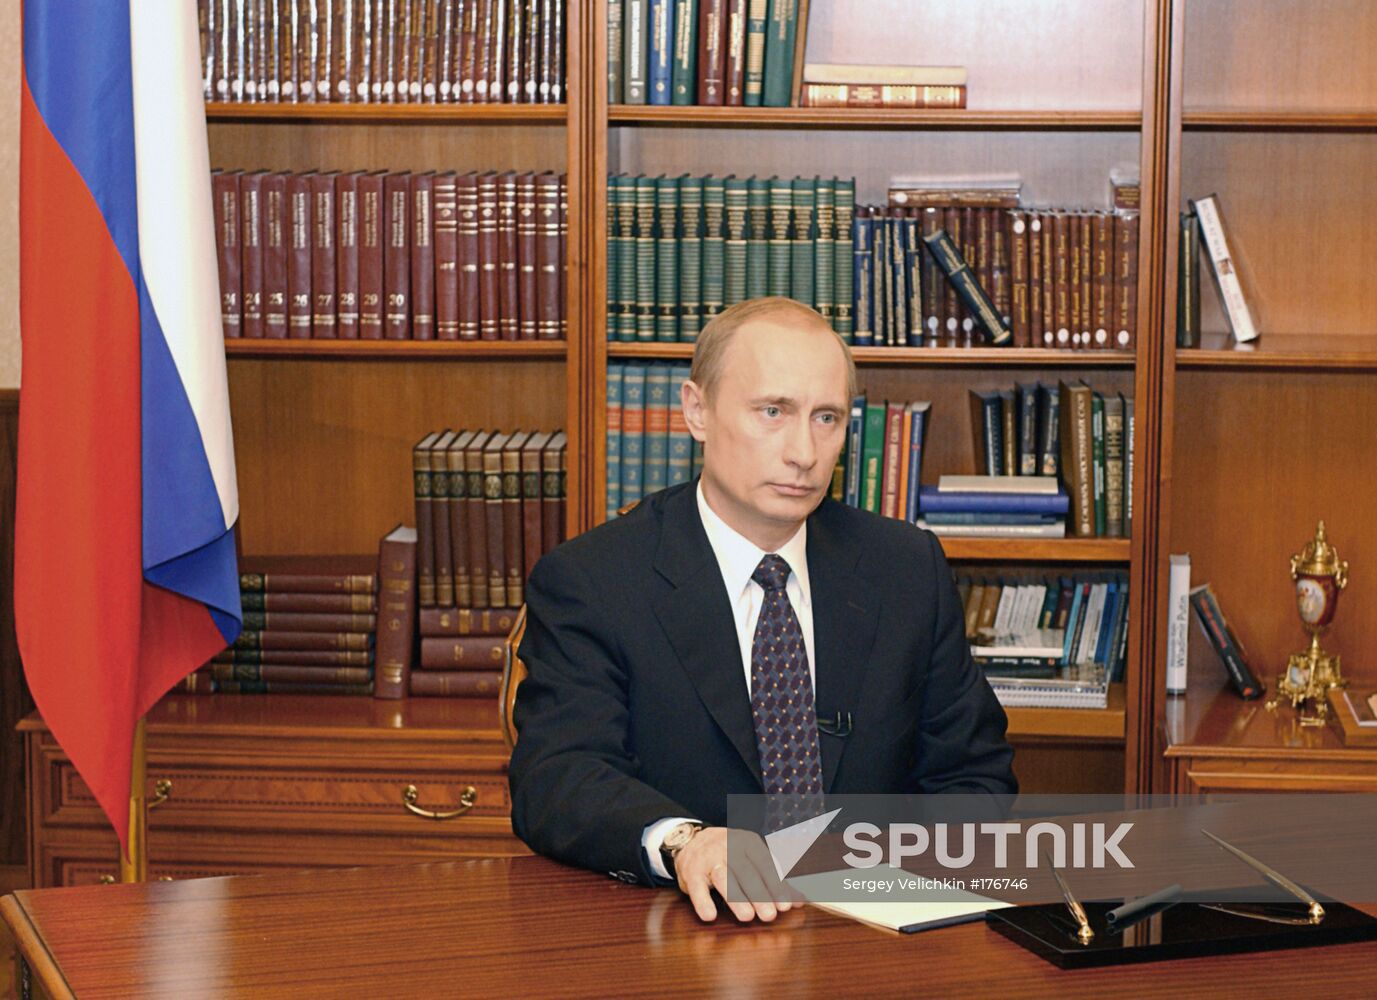 Vladimir Putin television address Chechnya referendum